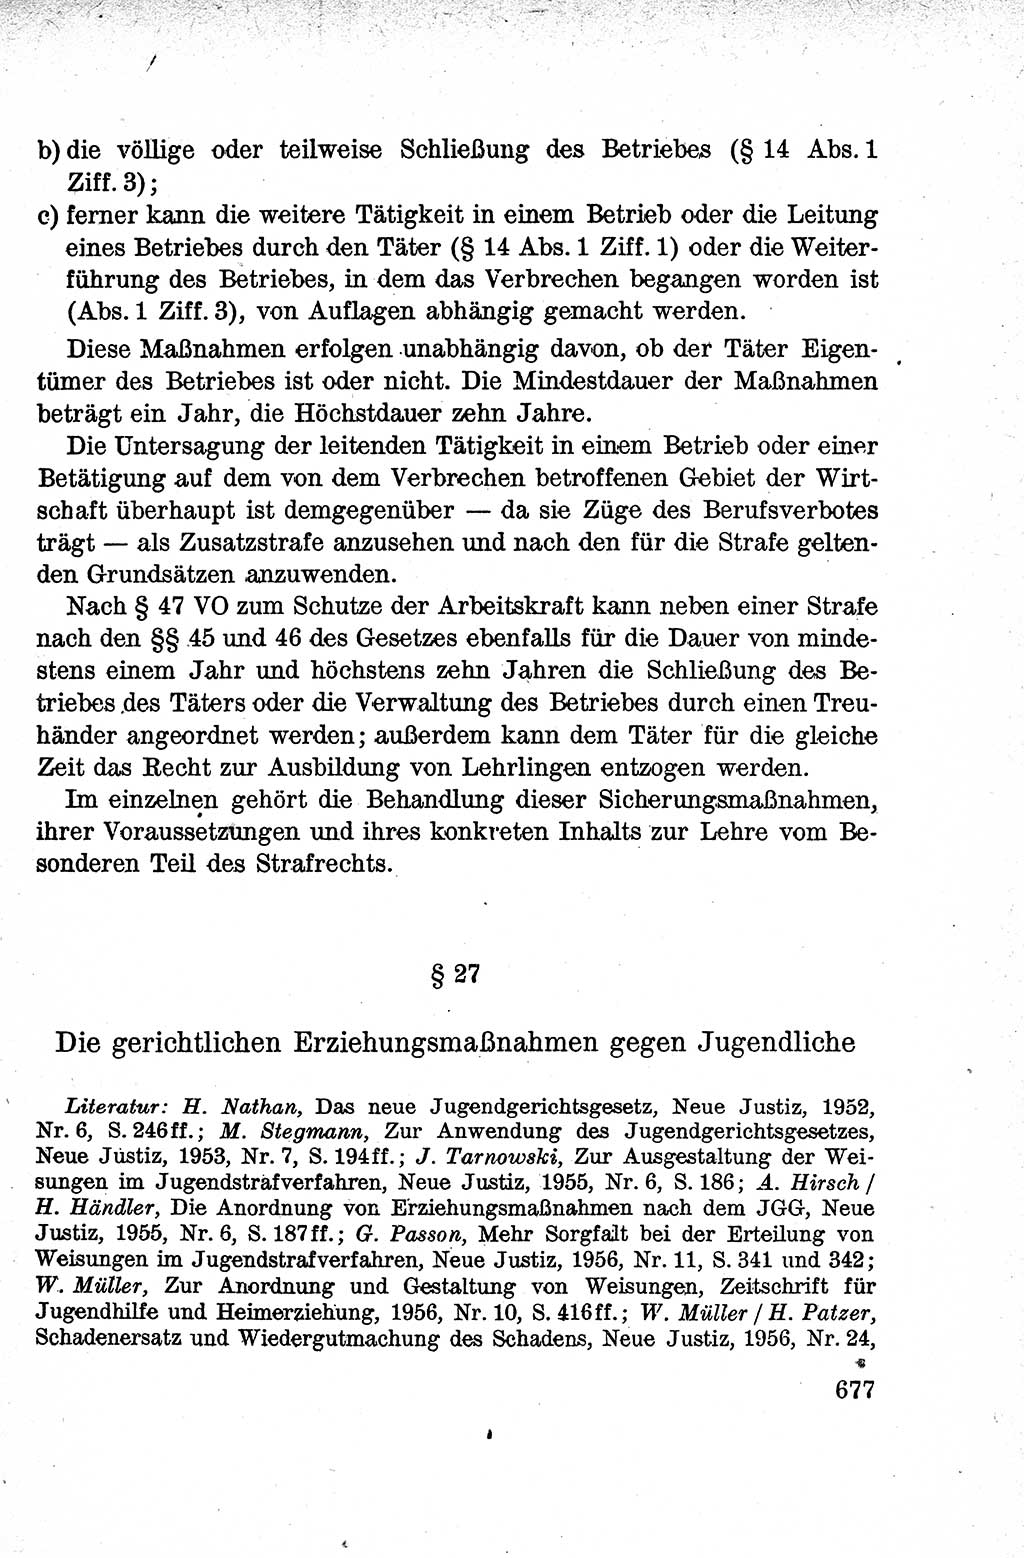 Lehrbuch des Strafrechts der Deutschen Demokratischen Republik (DDR), Allgemeiner Teil 1959, Seite 677 (Lb. Strafr. DDR AT 1959, S. 677)